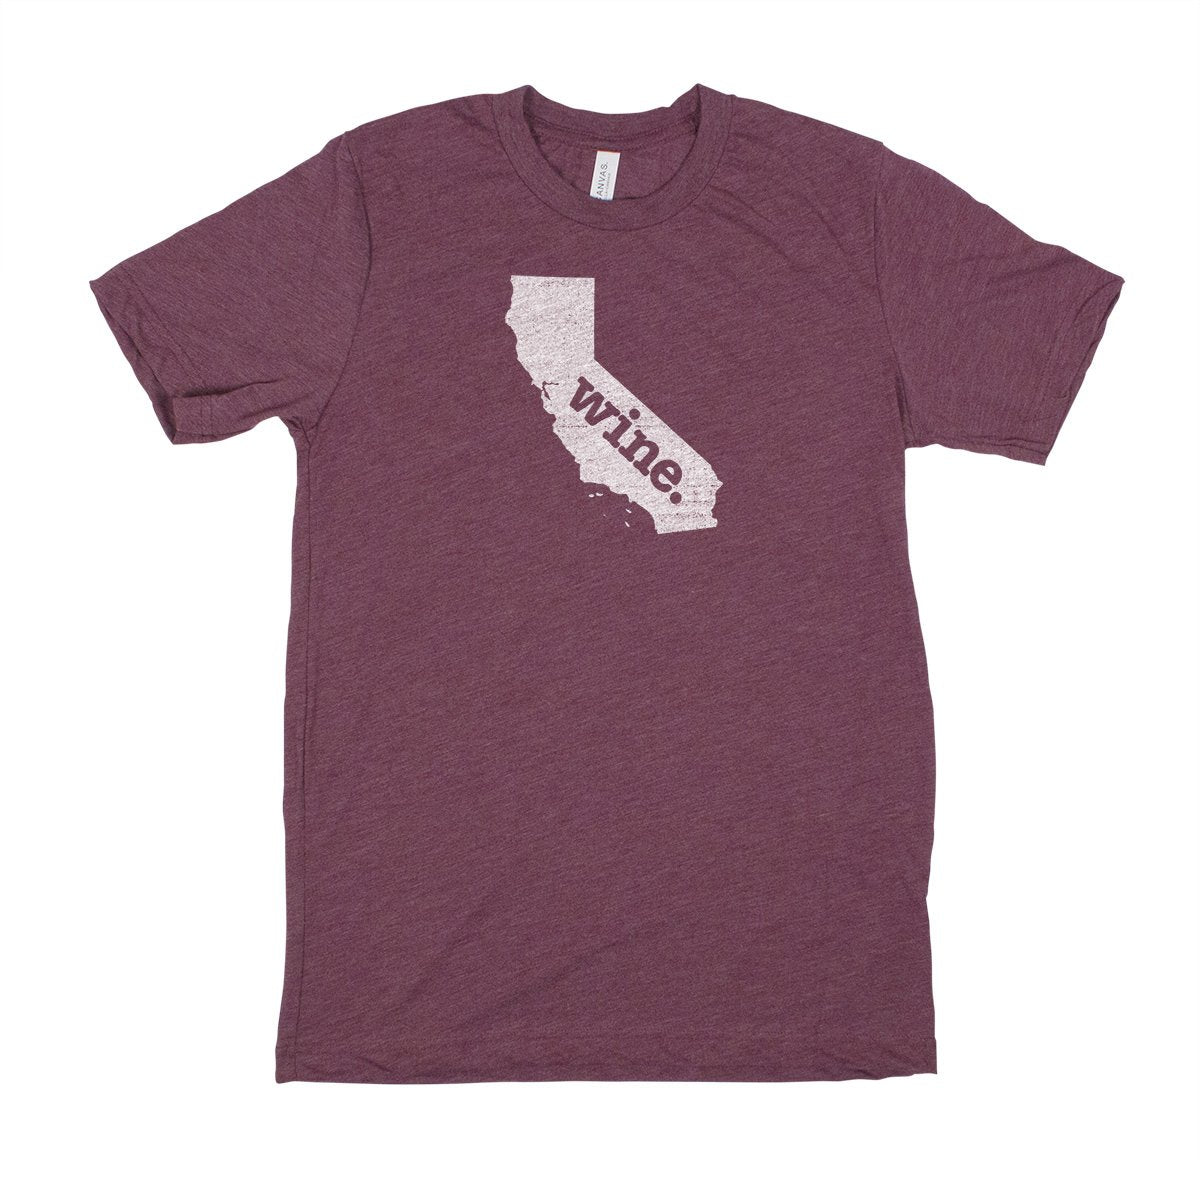 run. Men's Unisex T-Shirt - Washington